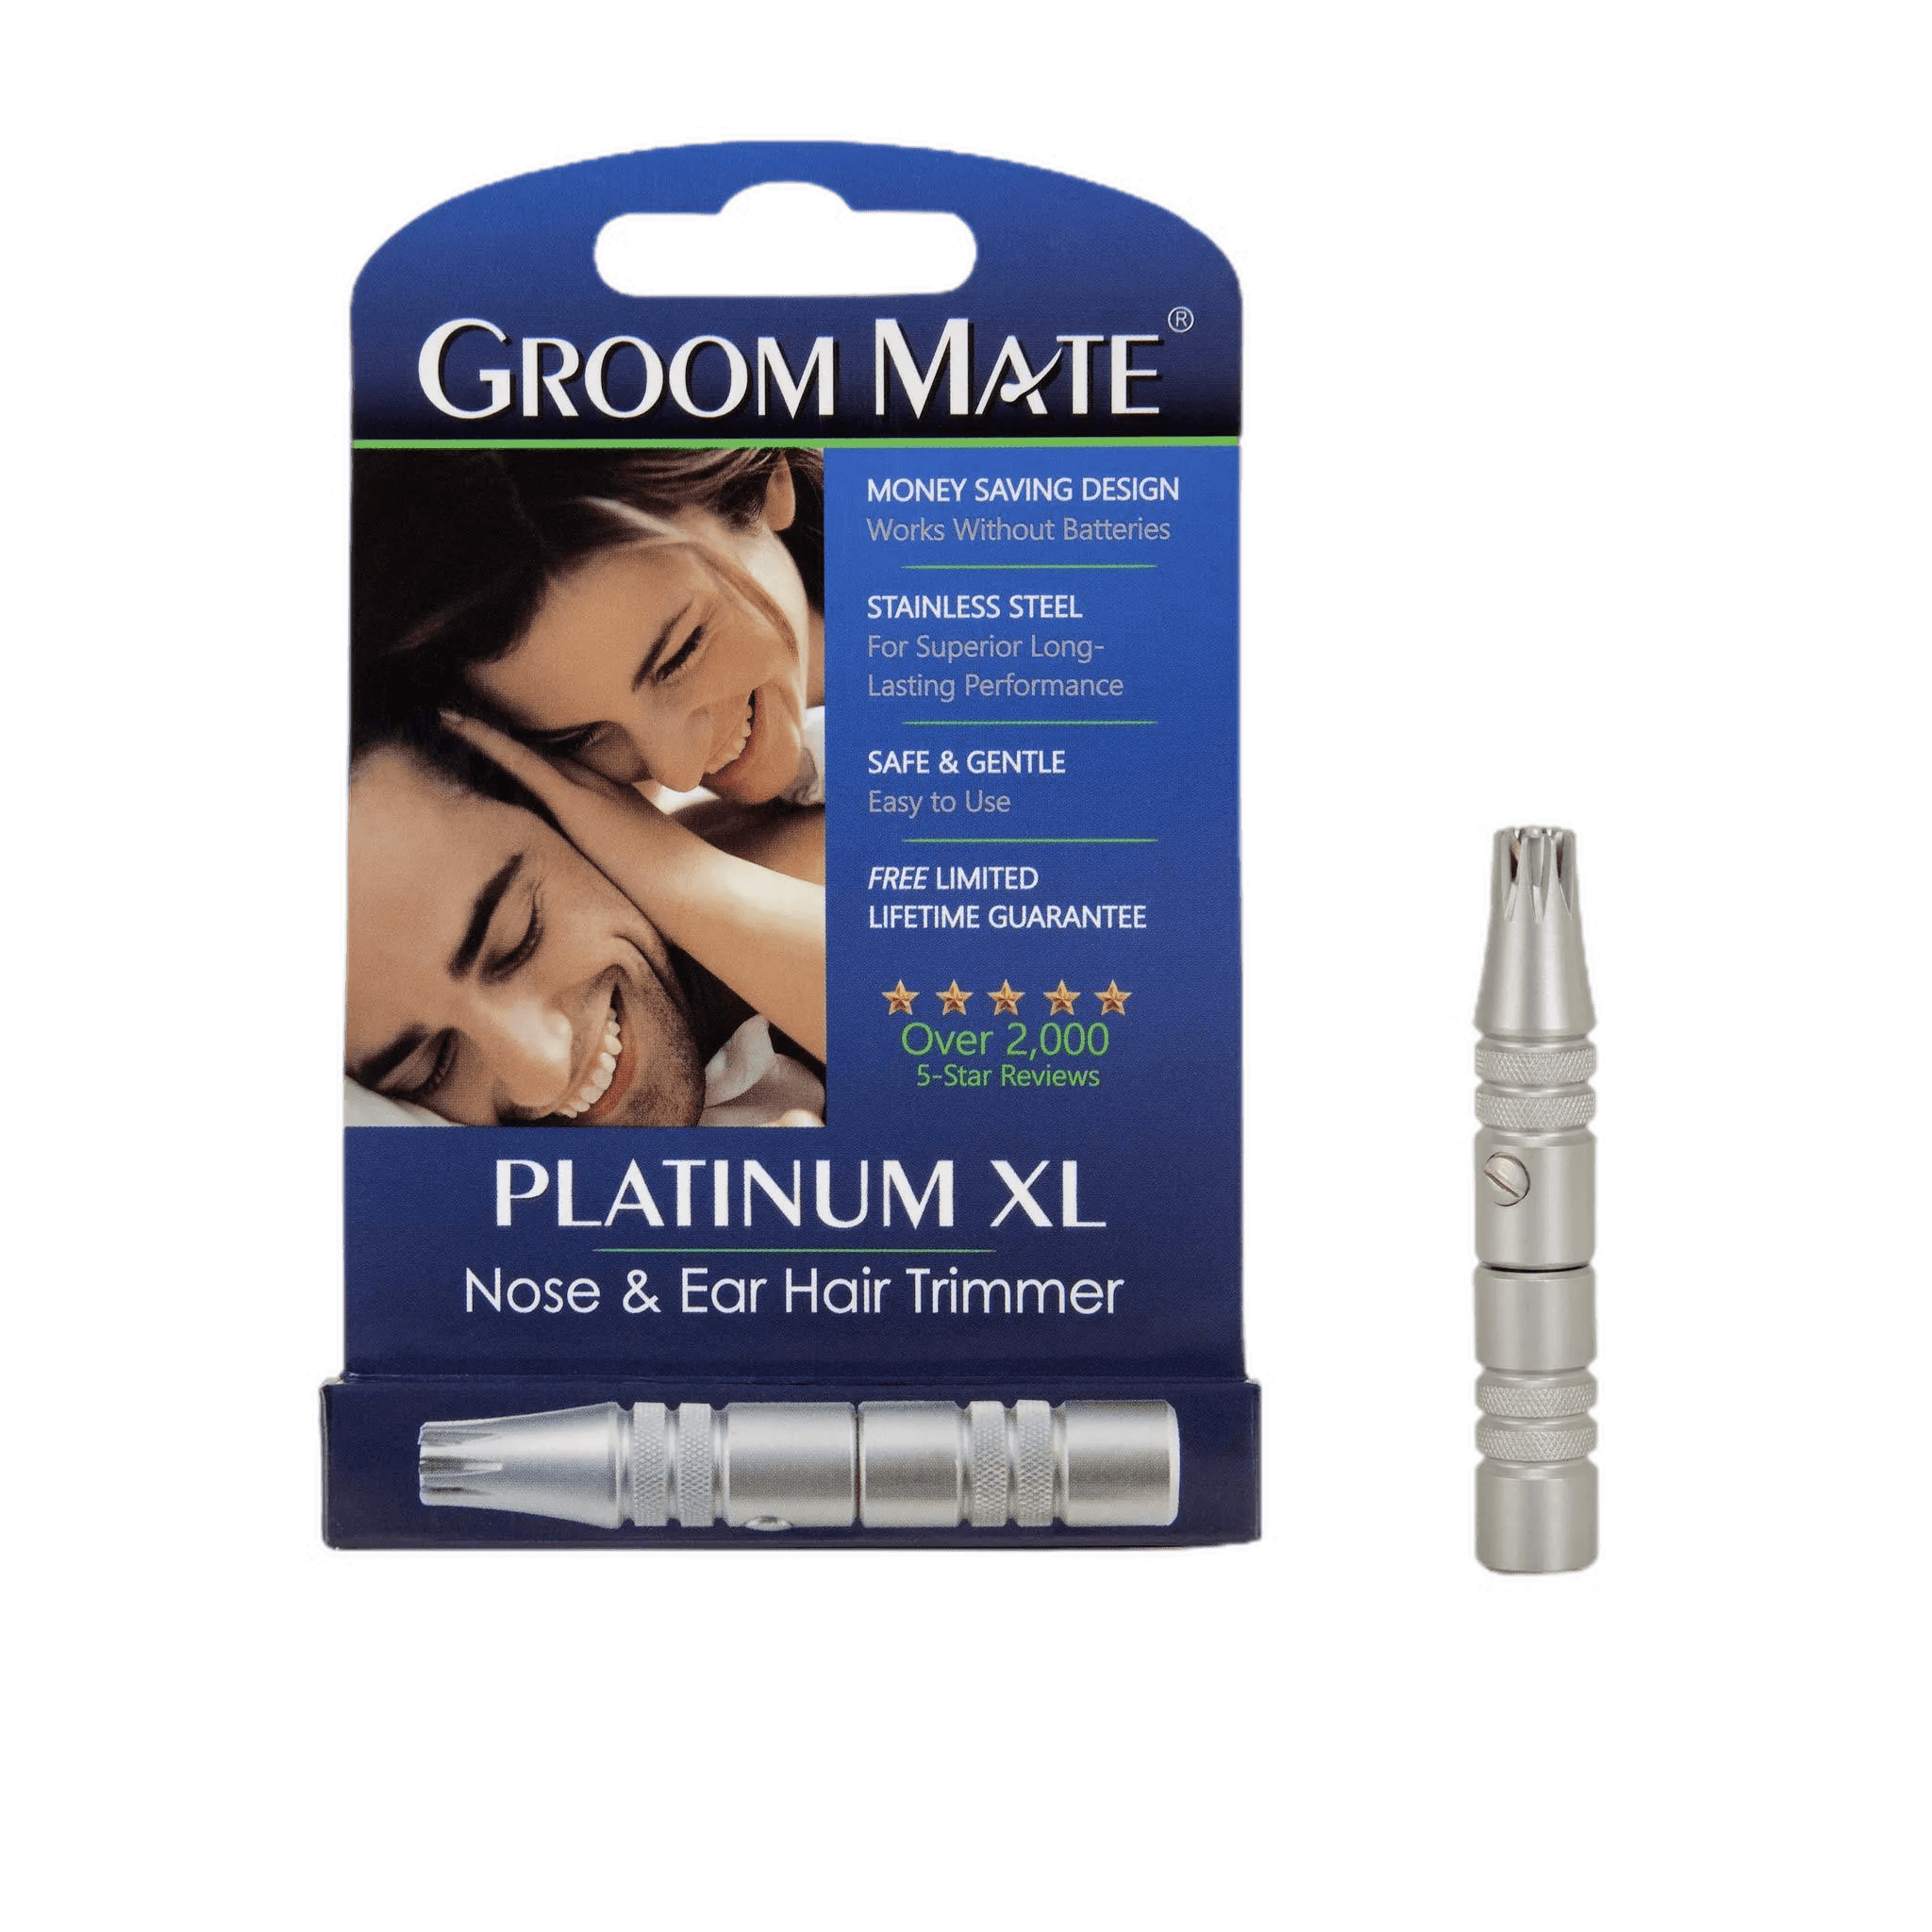 Groom Mate Platinum XL nesehårtrimmer